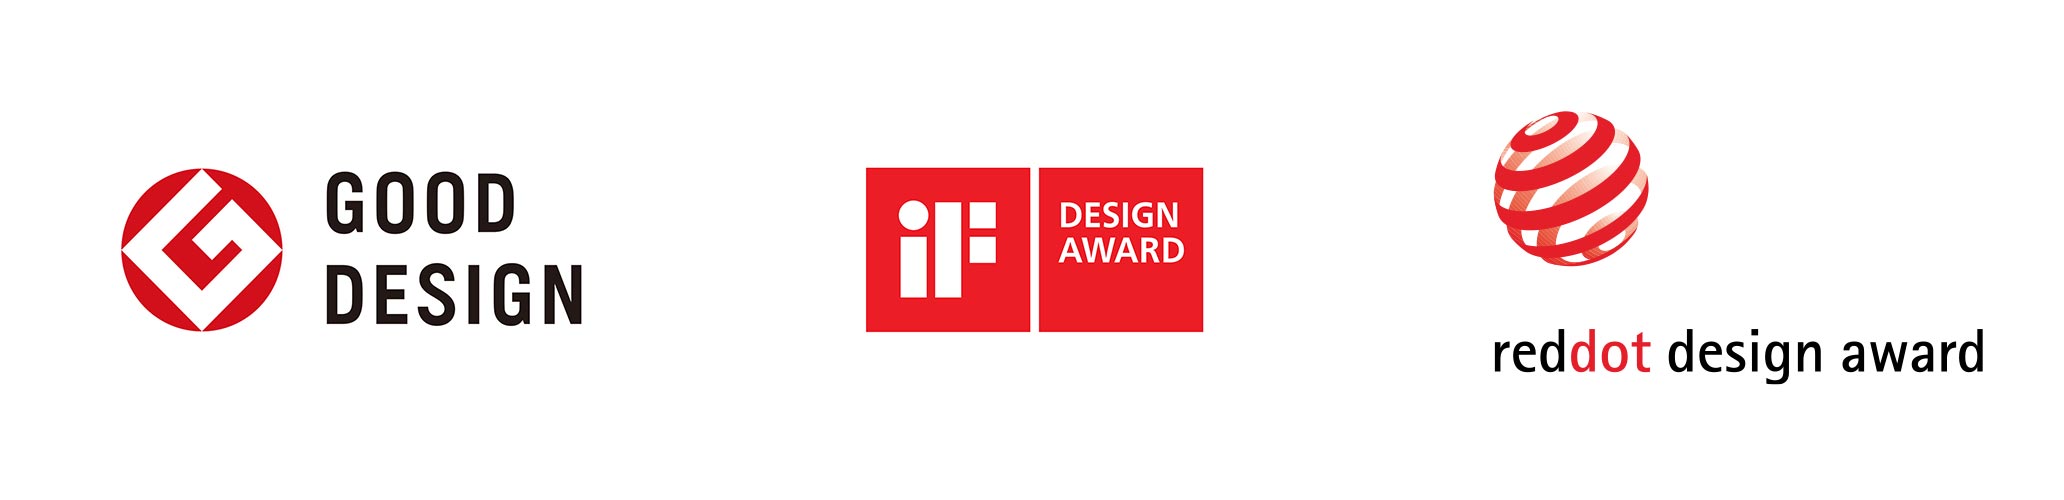 ロゴ:グッドデザイン賞、iFデザイン賞、レッドドット・デザイン賞